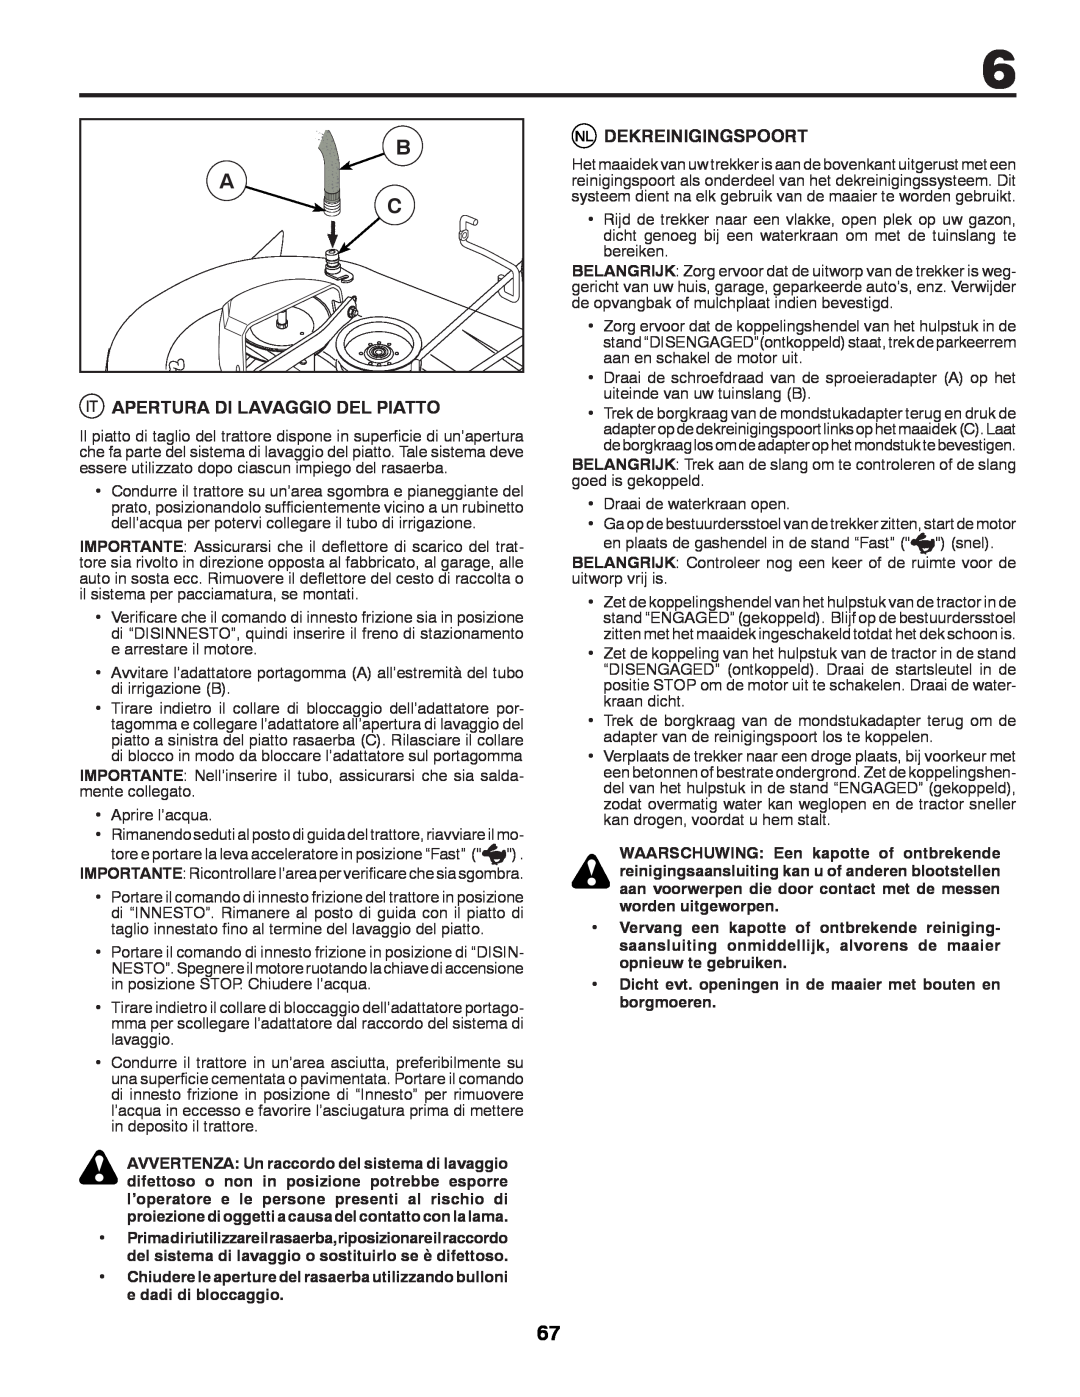 McCulloch 532 43 42-91 Rev. 1 instruction manual B A C, Apertura Di Lavaggio Del Piatto, Dekreinigingspoort 